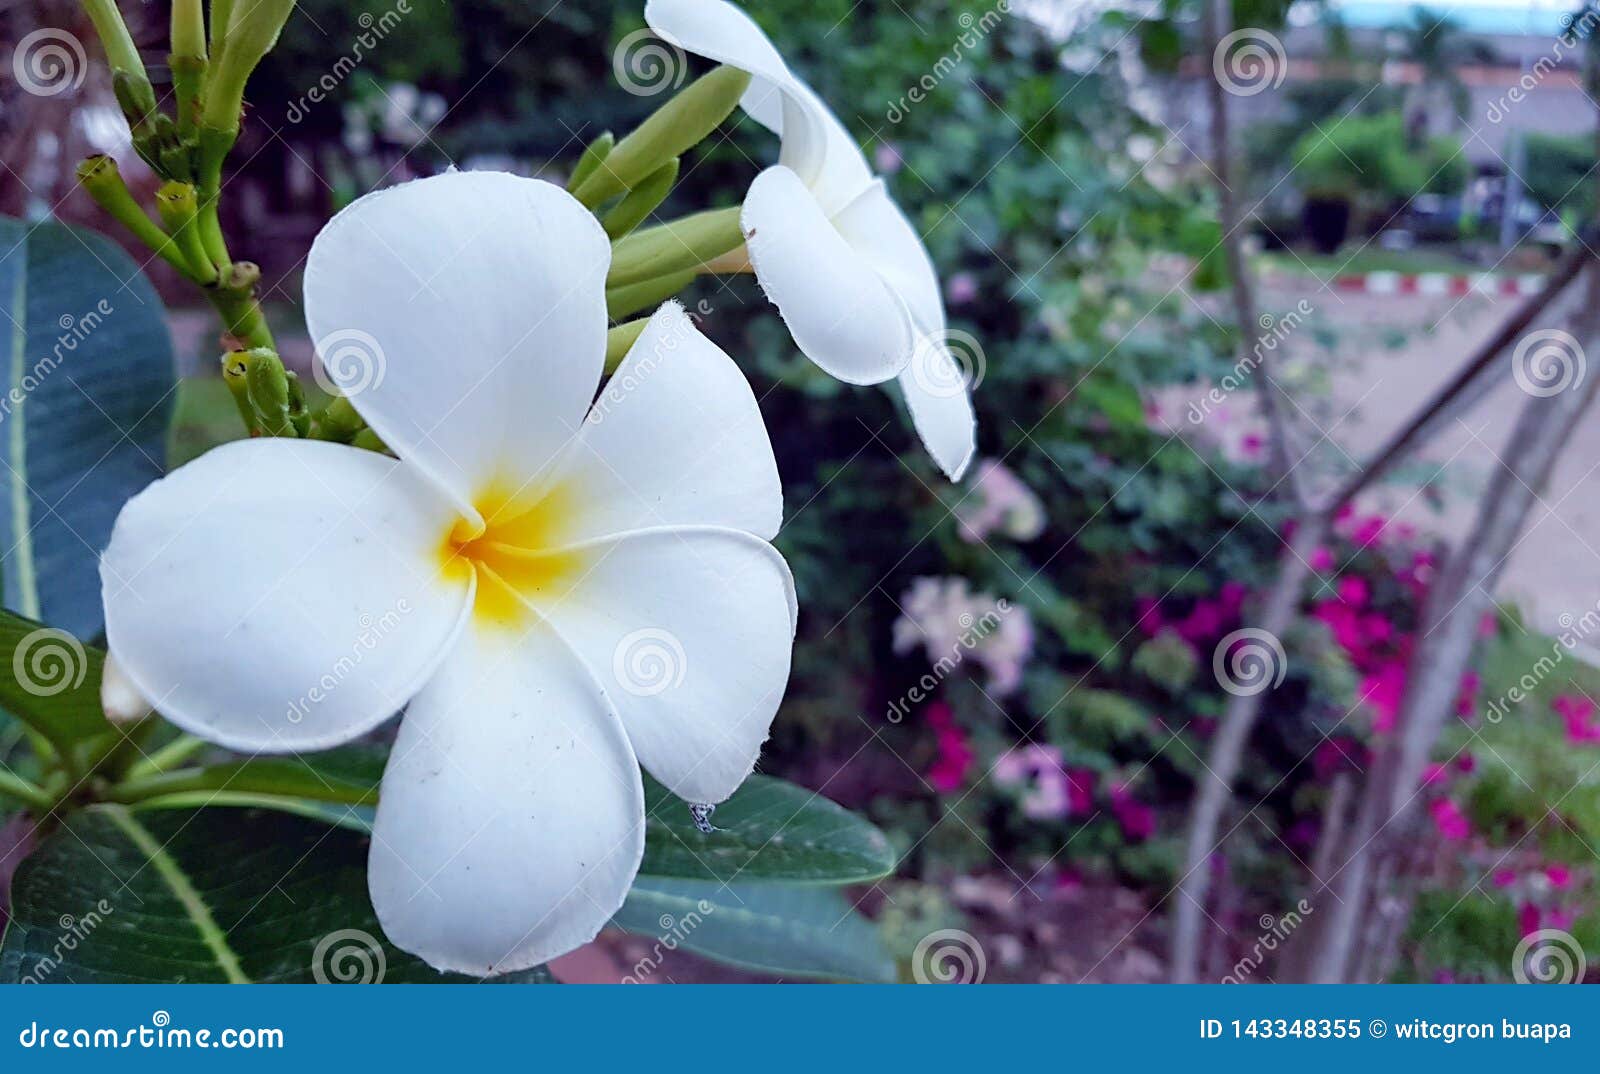 Fleurs Blanches De Plumeria Sur Un Arbre Image stock - Image du fond, blanc:  143348355